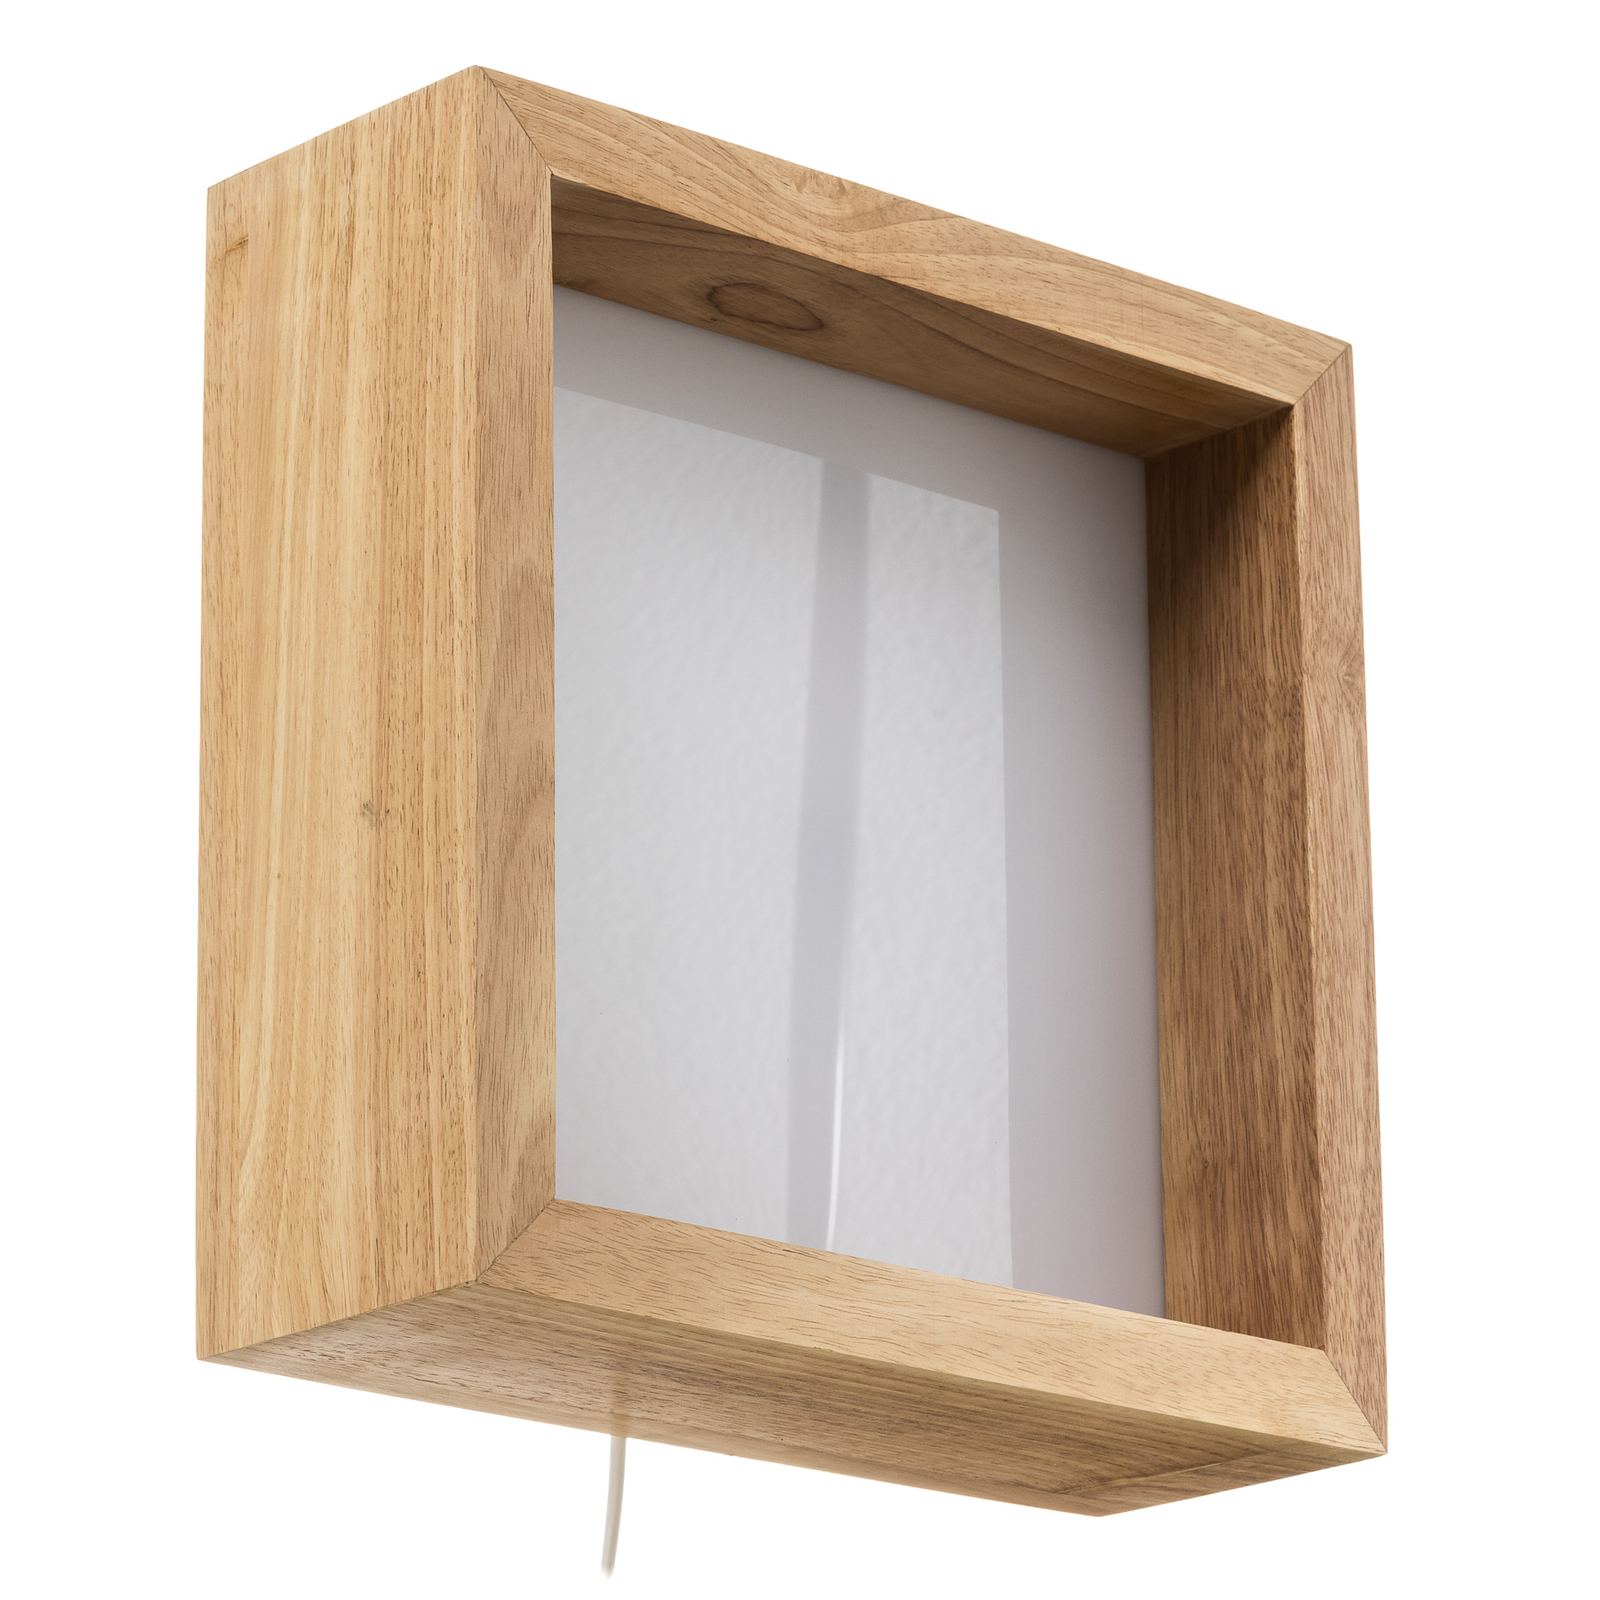 Aplică LED Window, 37 x 37cm, lemn de stejar